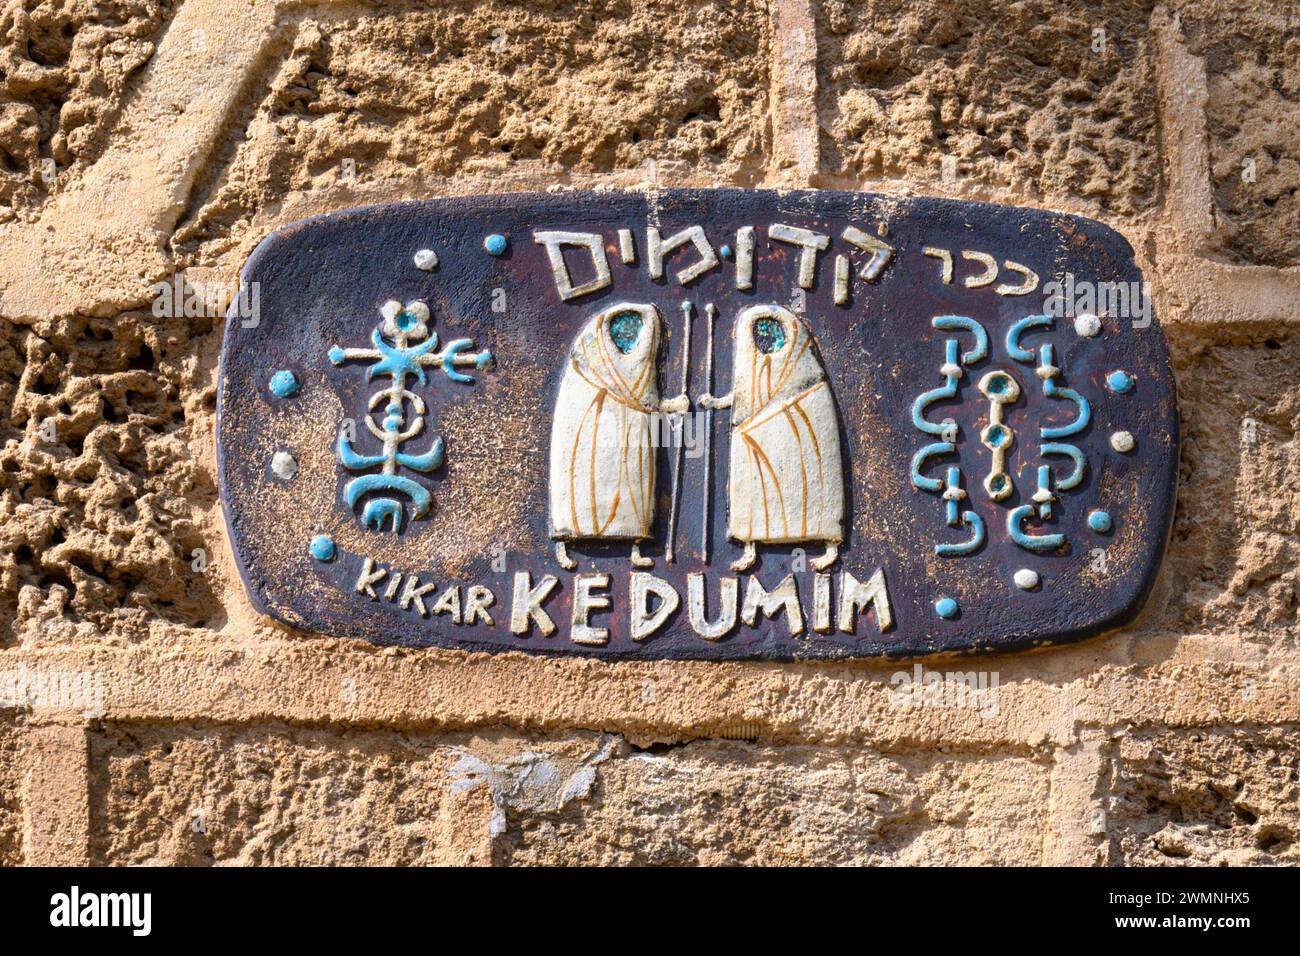 Kikar Kdumim (Kdumim Square) panneau de rue en céramique vitrée Old Jaffa, Israël Banque D'Images